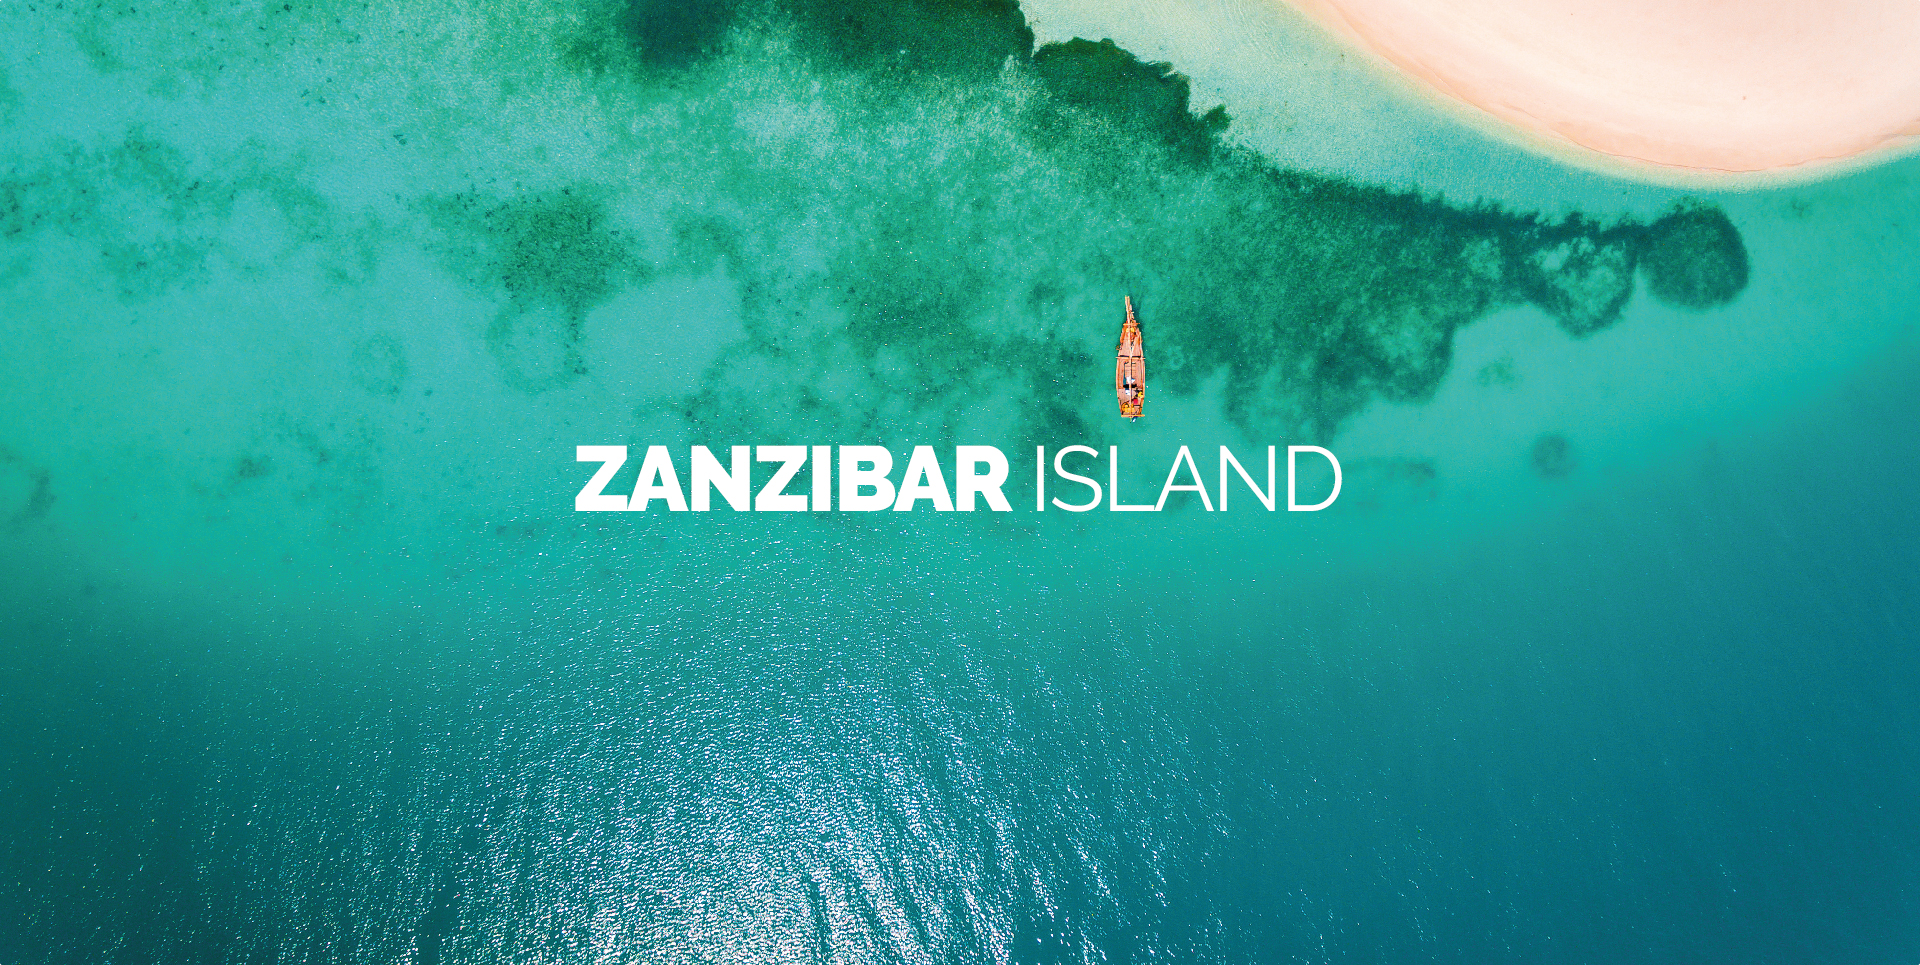 ZANZIBAR ISLAND